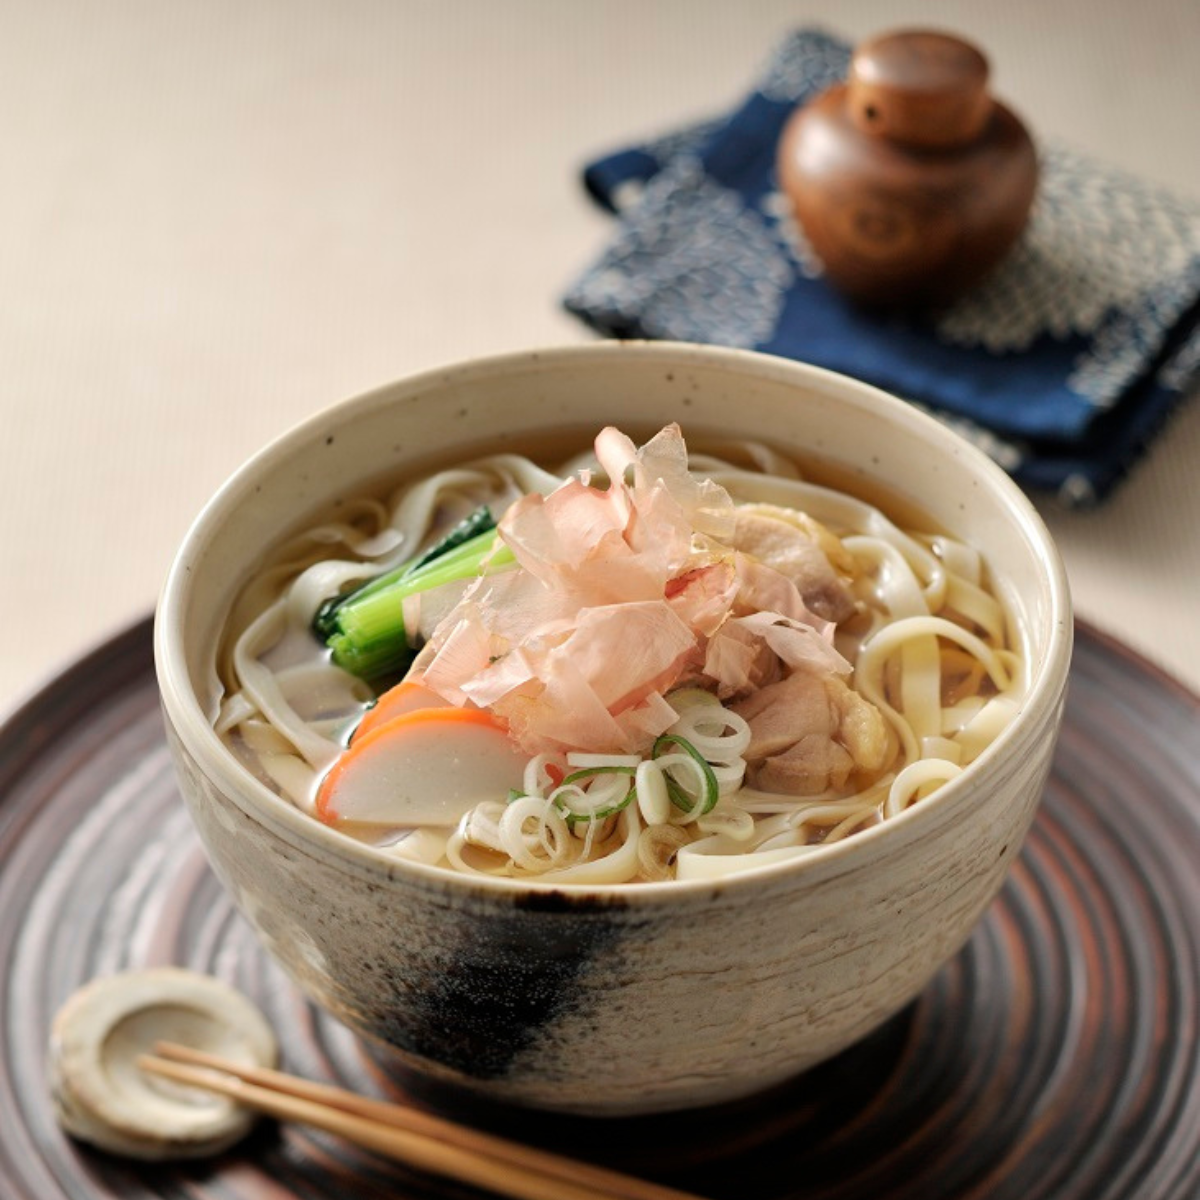 A bowl of kishimen udon noodles soup